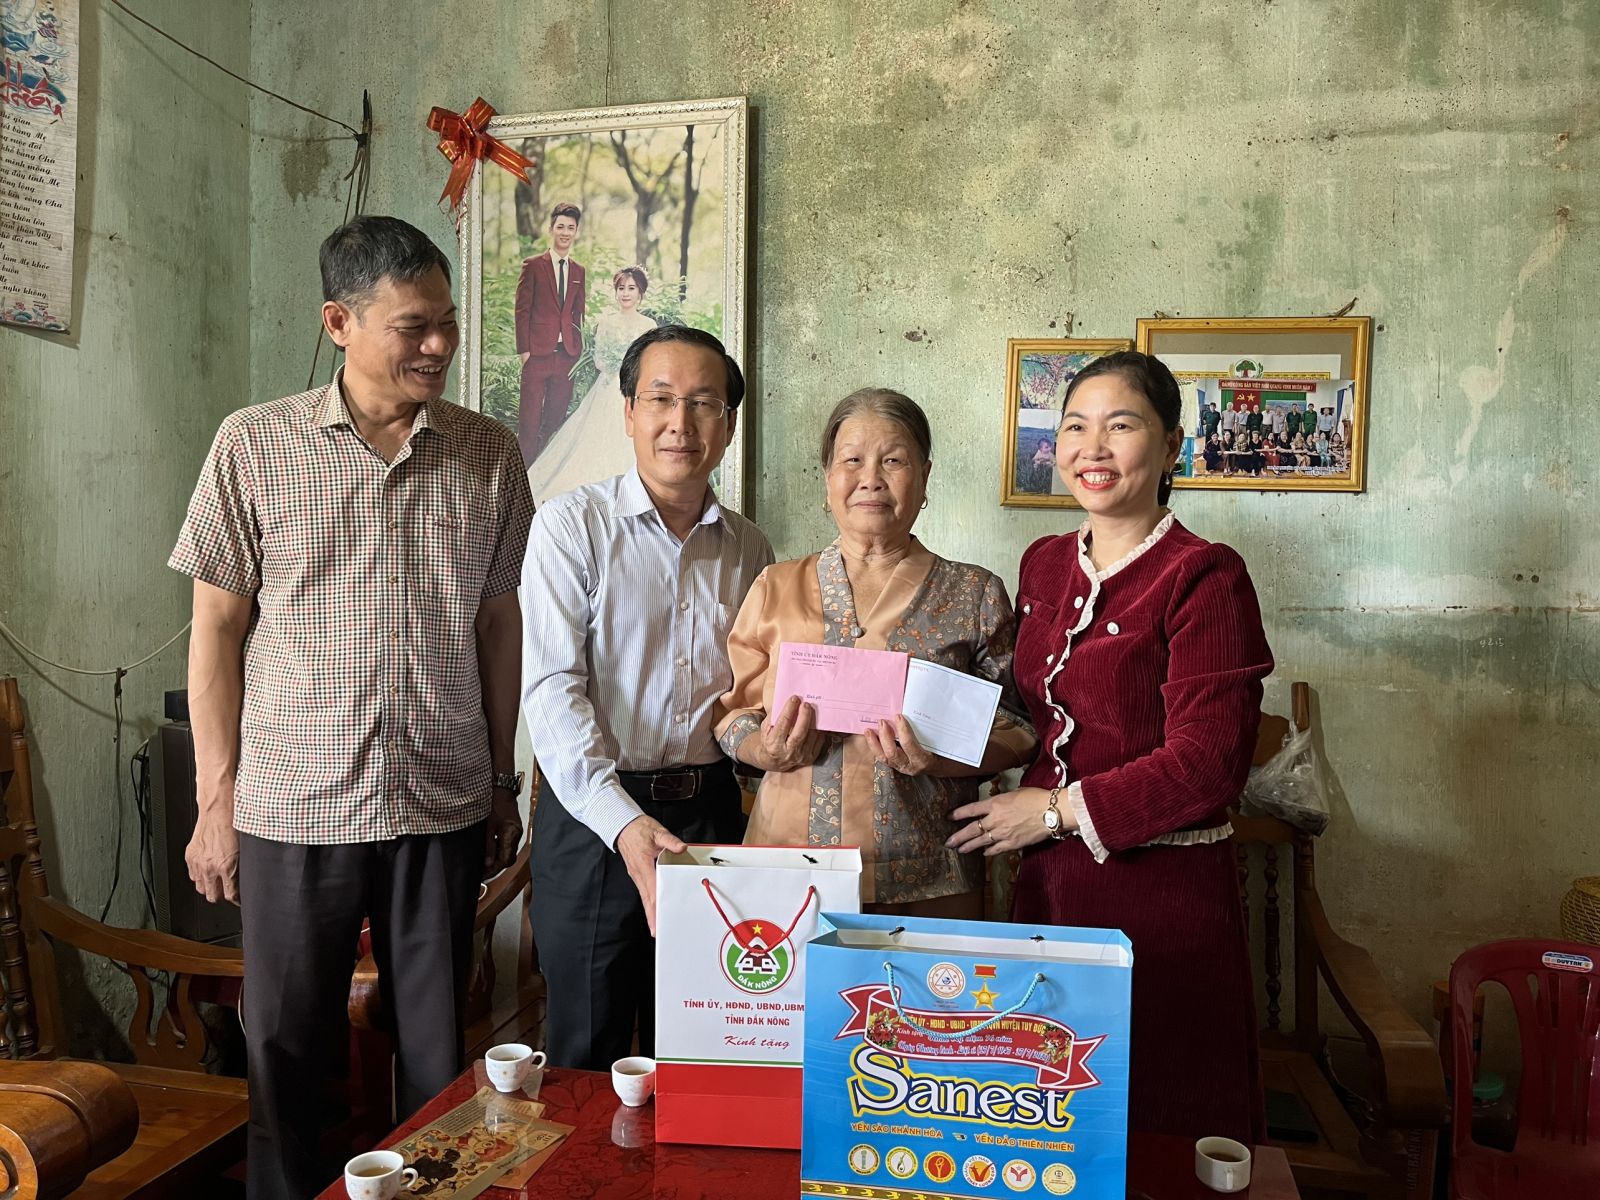 Đồng chí Huỳnh Ngọc Anh, Ủy viên Ban Thường vụ Tỉnh ủy, Bí thư Đảng ủy Khối thăm, tặng quà gia đình người có công với cách mạng tại xã Quảng Tân, huyện Tuy Đức